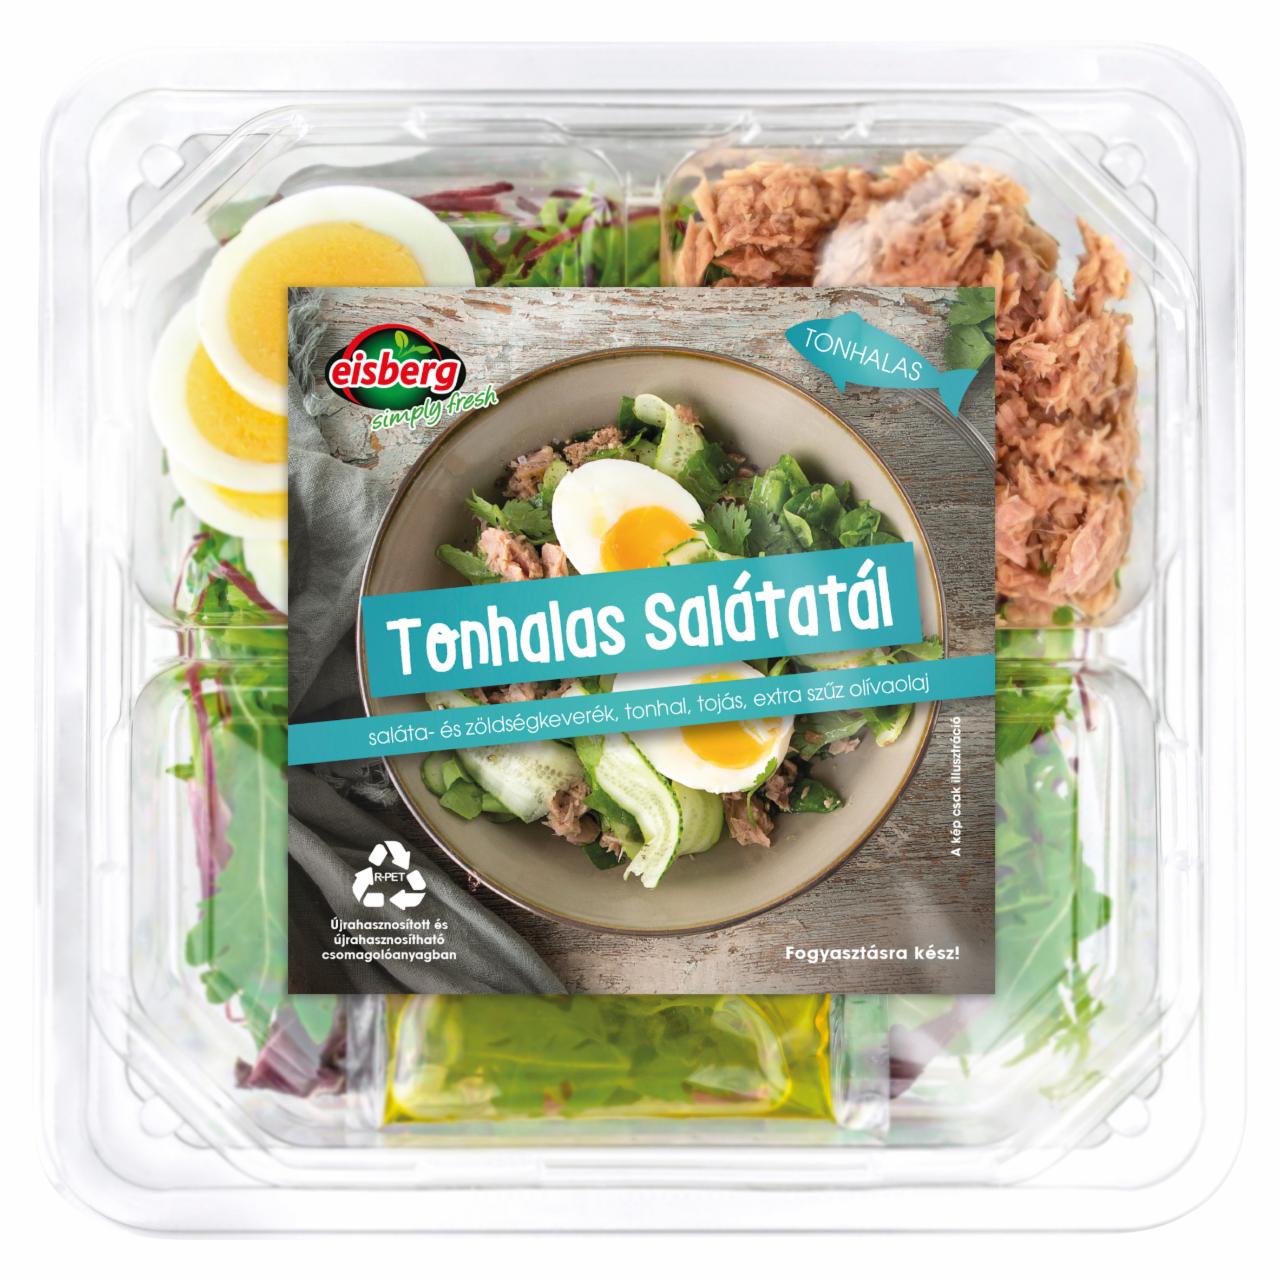 Képek - Eisberg Tonhalas salátatál 180 g 